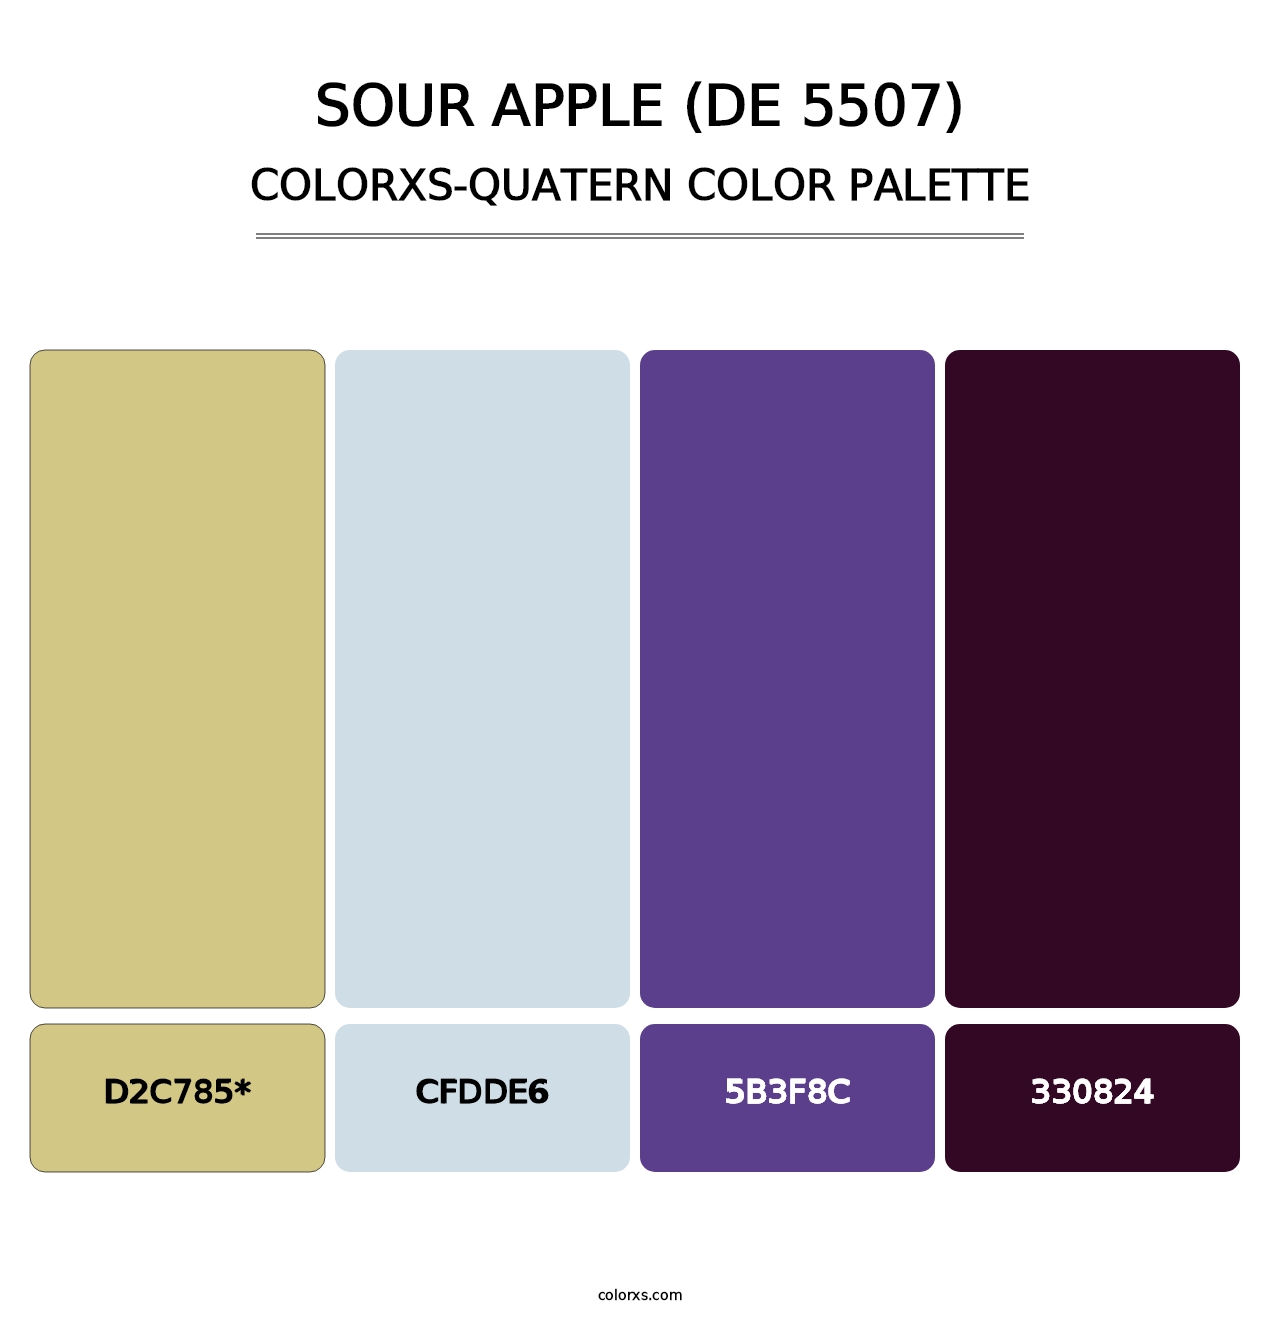 Sour Apple (DE 5507) - Colorxs Quatern Palette